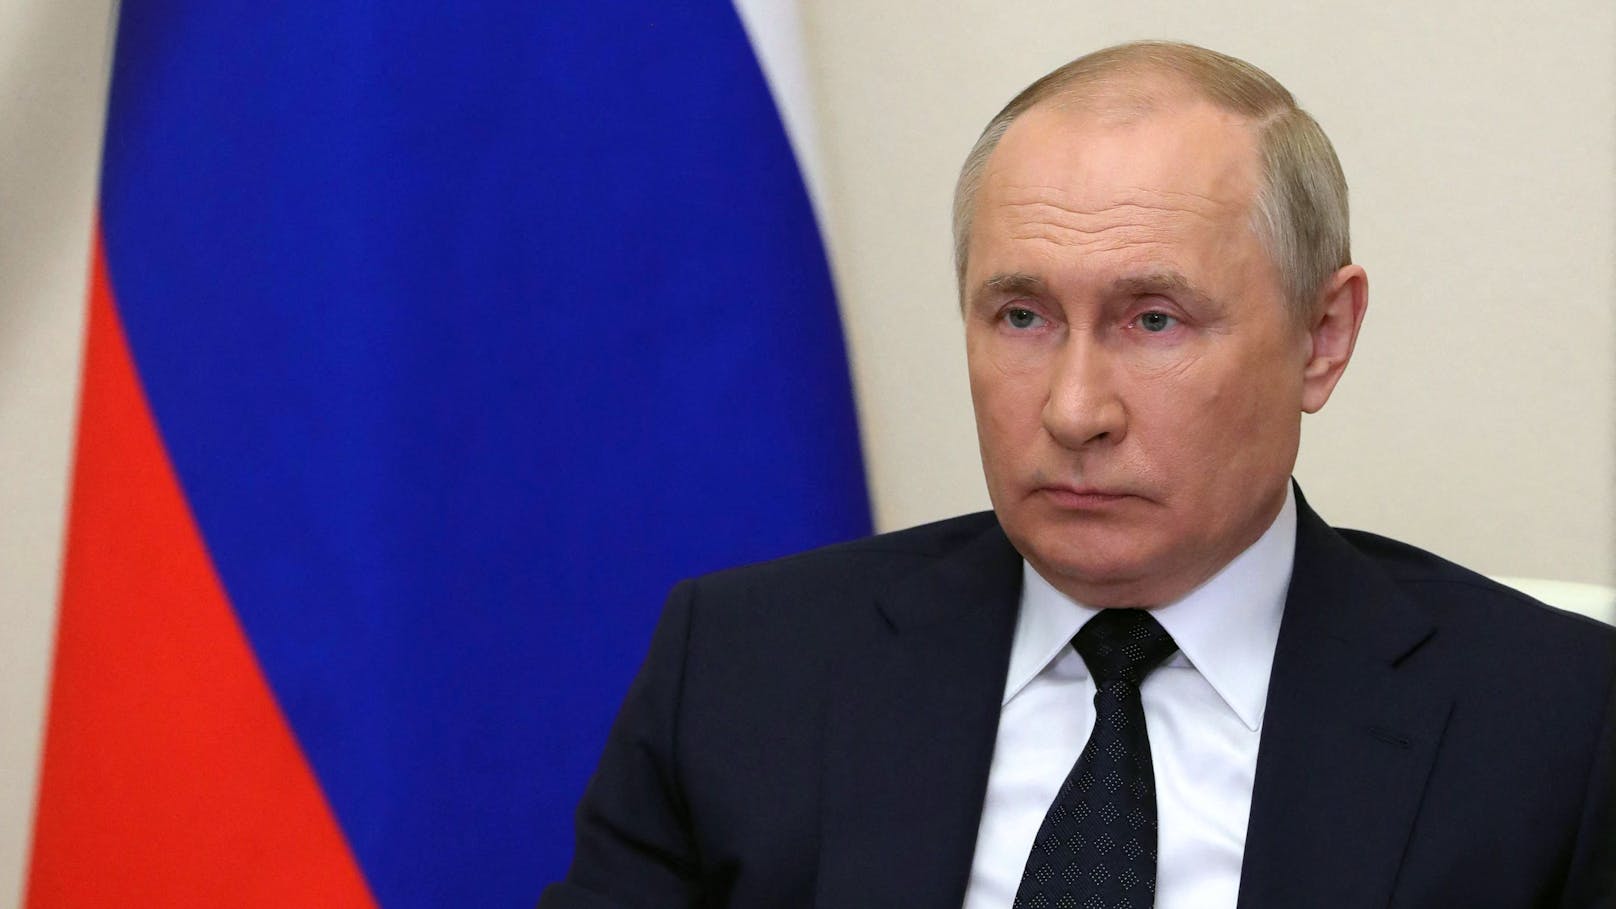 Fragt man im Kreml nach, erfreut sich Putin auch nach 23 Jahren Amtszeit bester Gesundheit. Doch die Gerüchte mehren sich, er würde todkrank sein.